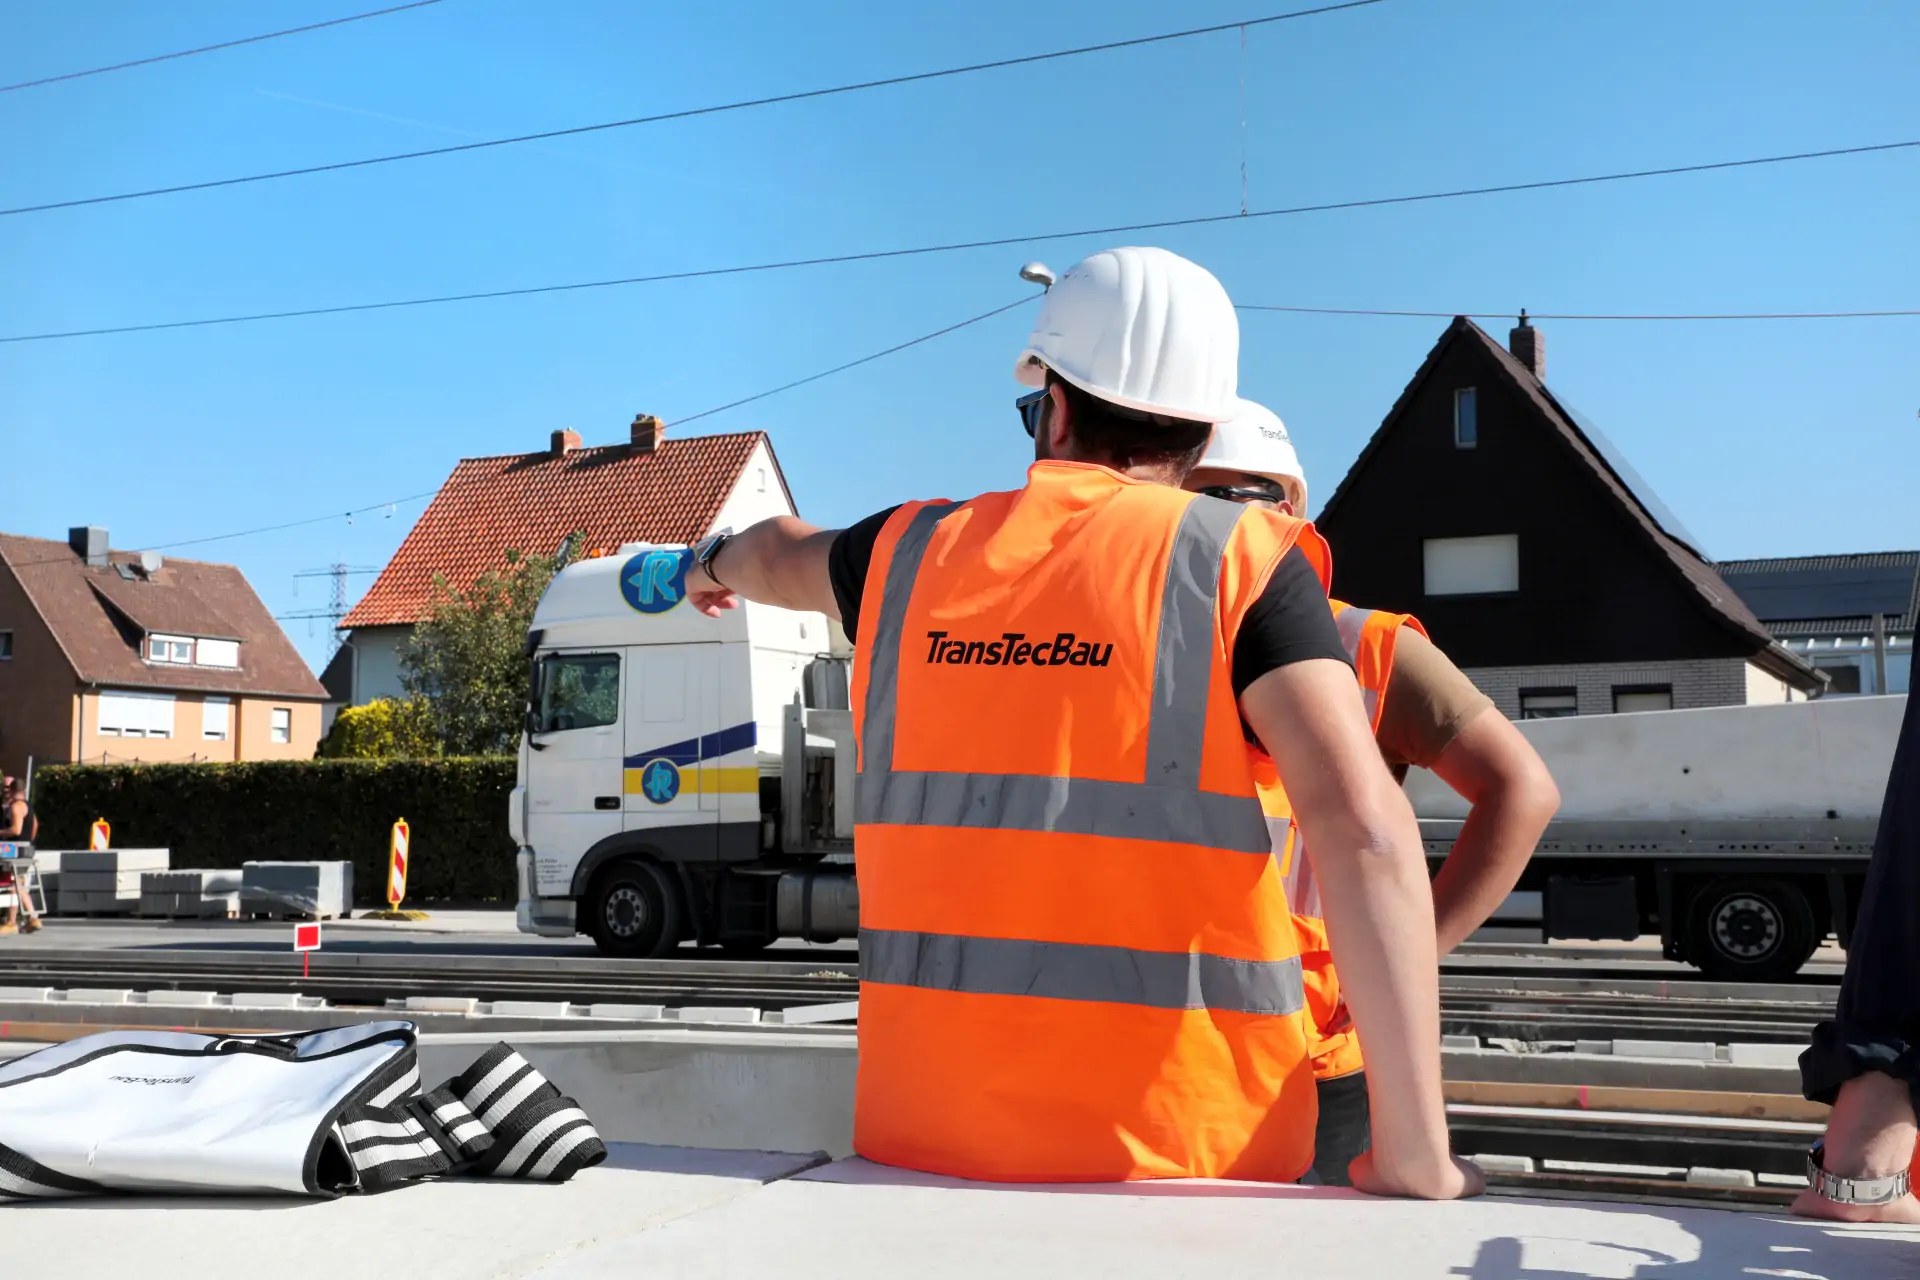 Bauüberwachung/Bauoberleitung | TransTecBau GmbH: Qualitätssicherung in Hannover